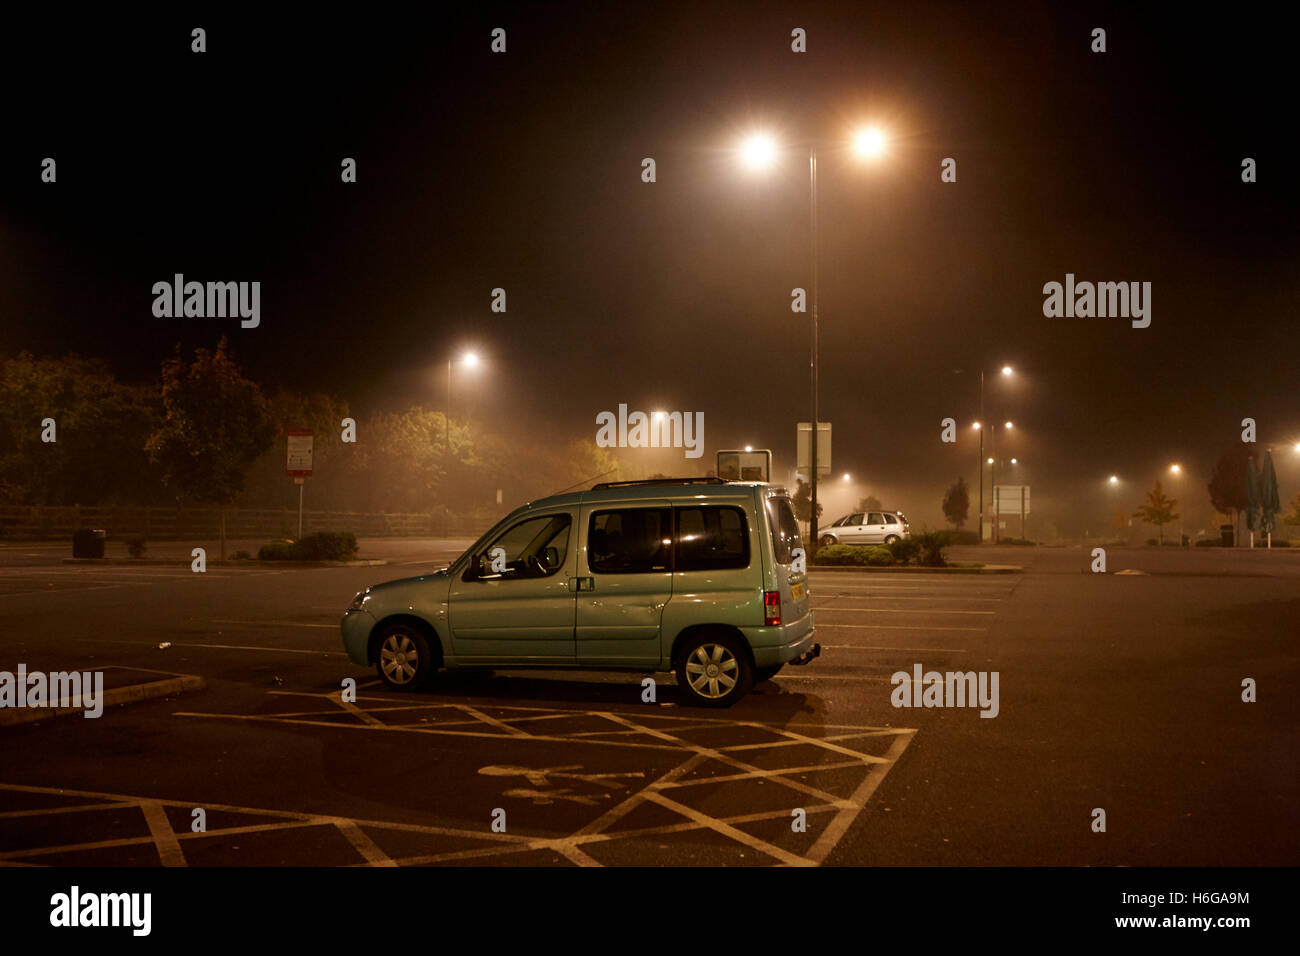 Voiture garée dans la nuit dans le parking d'une station d'autoroute dans le brouillard Angleterre Royaume-Uni Banque D'Images